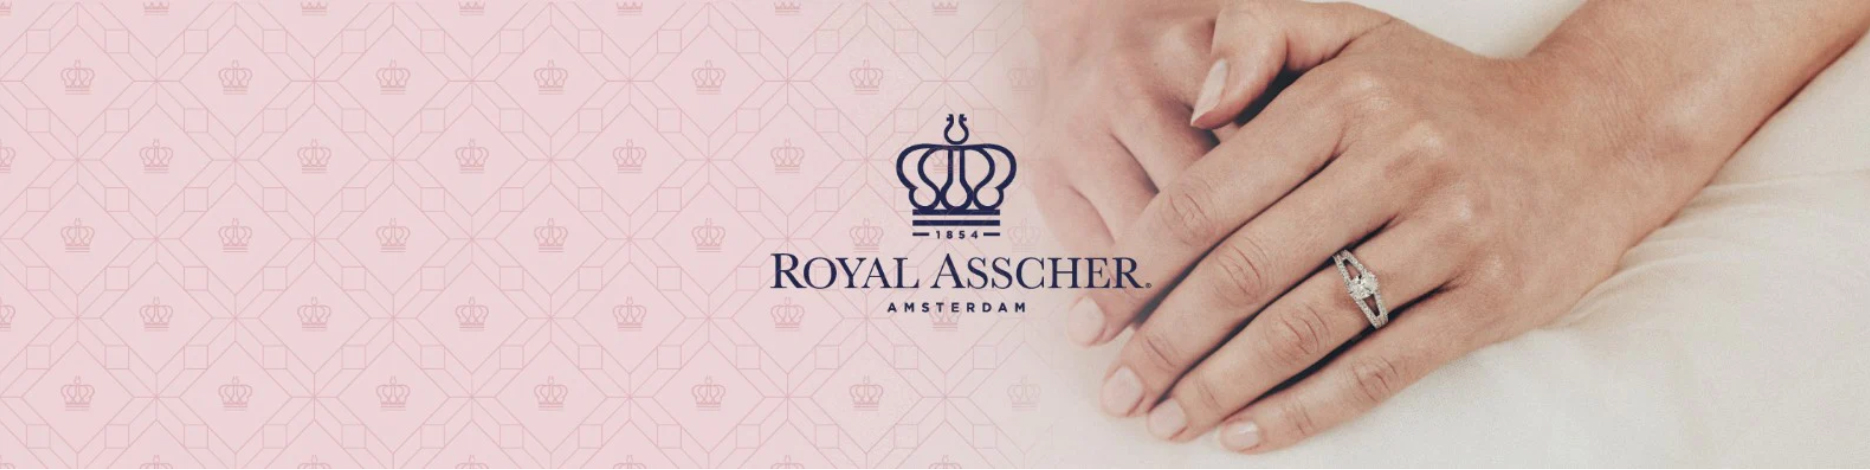 Royal Asscher Diamond Buying Guide